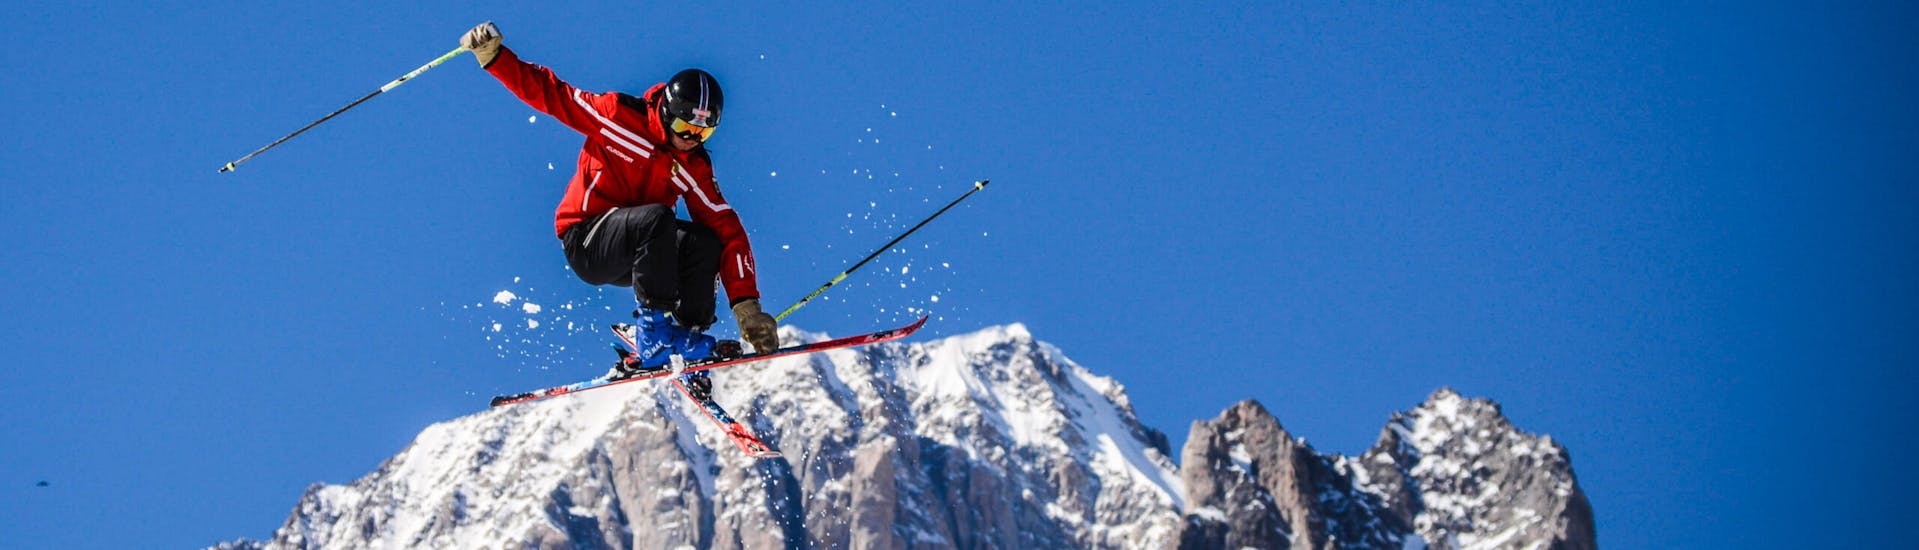 Skilessen voor volwassenen vanaf 13 jaar voor alle niveaus.